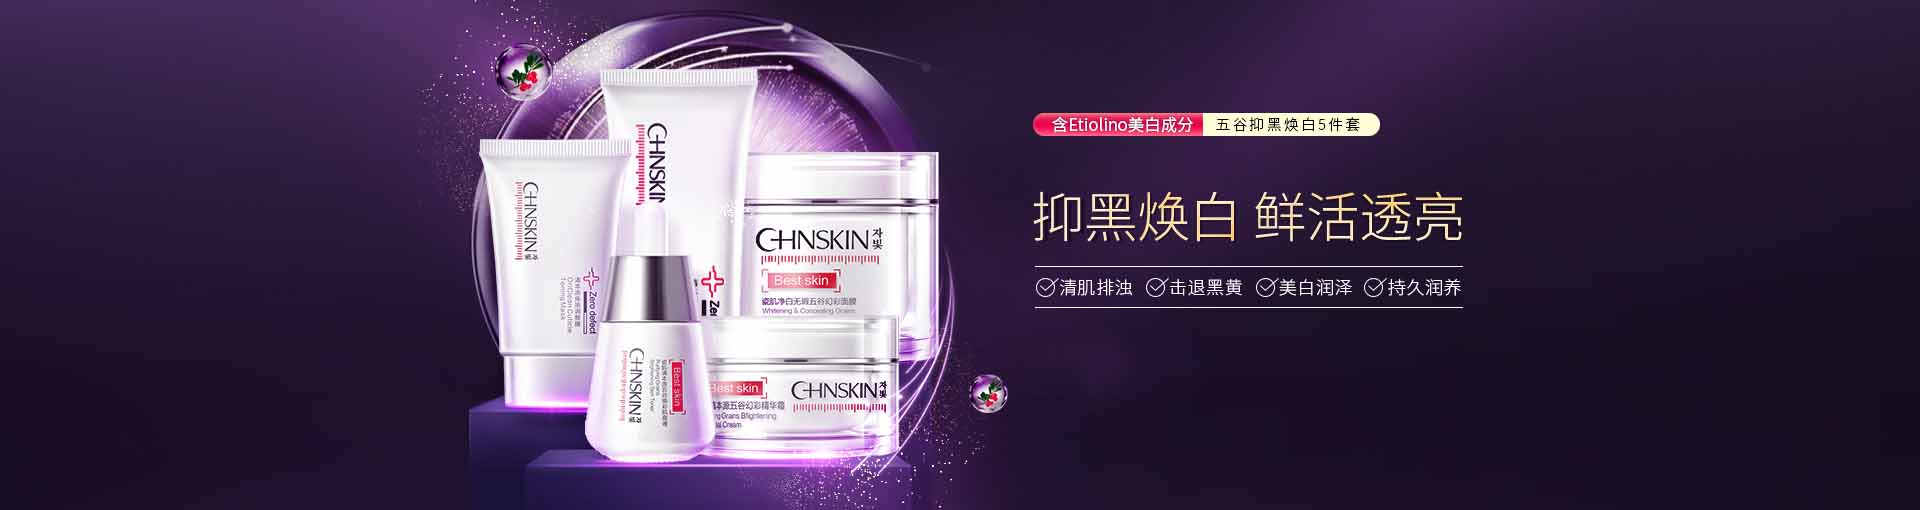 瓷肌_化妆护肤品成分介绍_CHNSKIN是哪个国家的品牌_是什么牌子